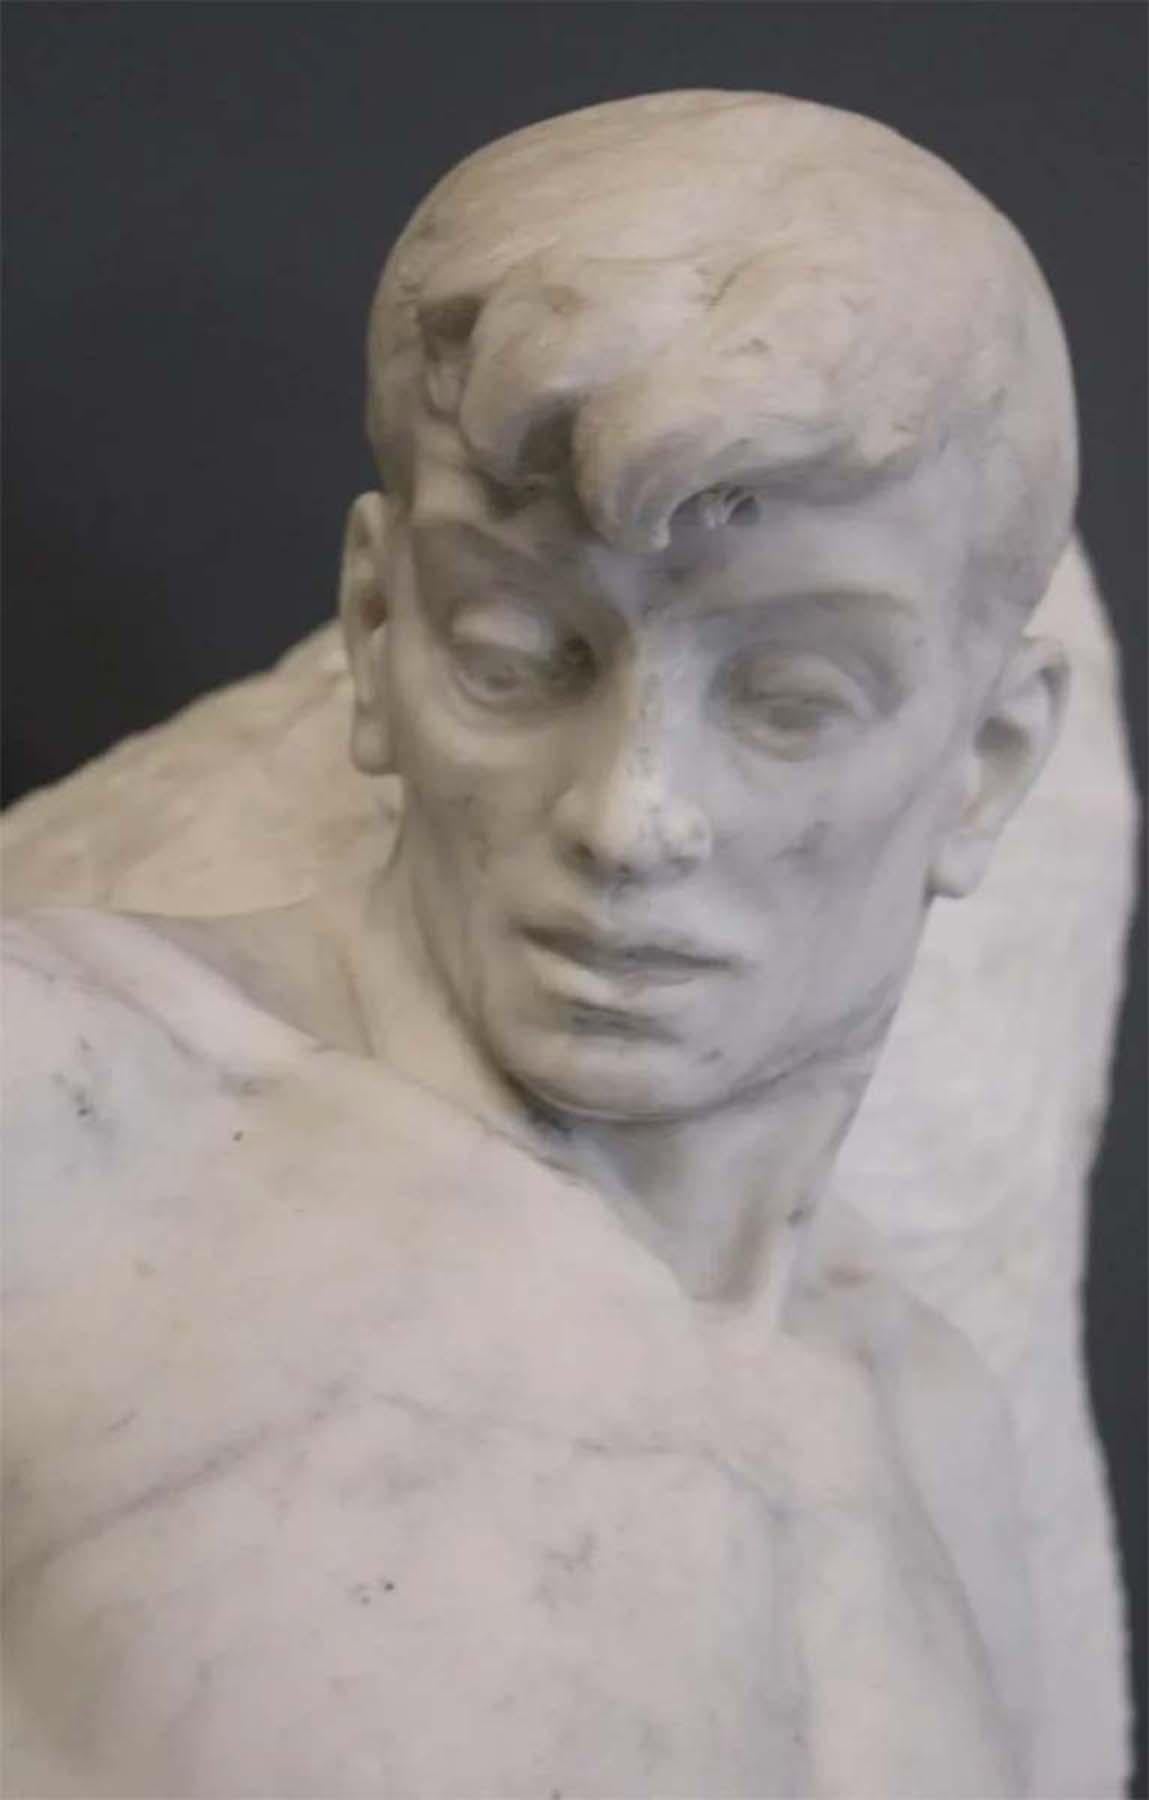 L'ABISSO - Sculpture by E. Garabaldi